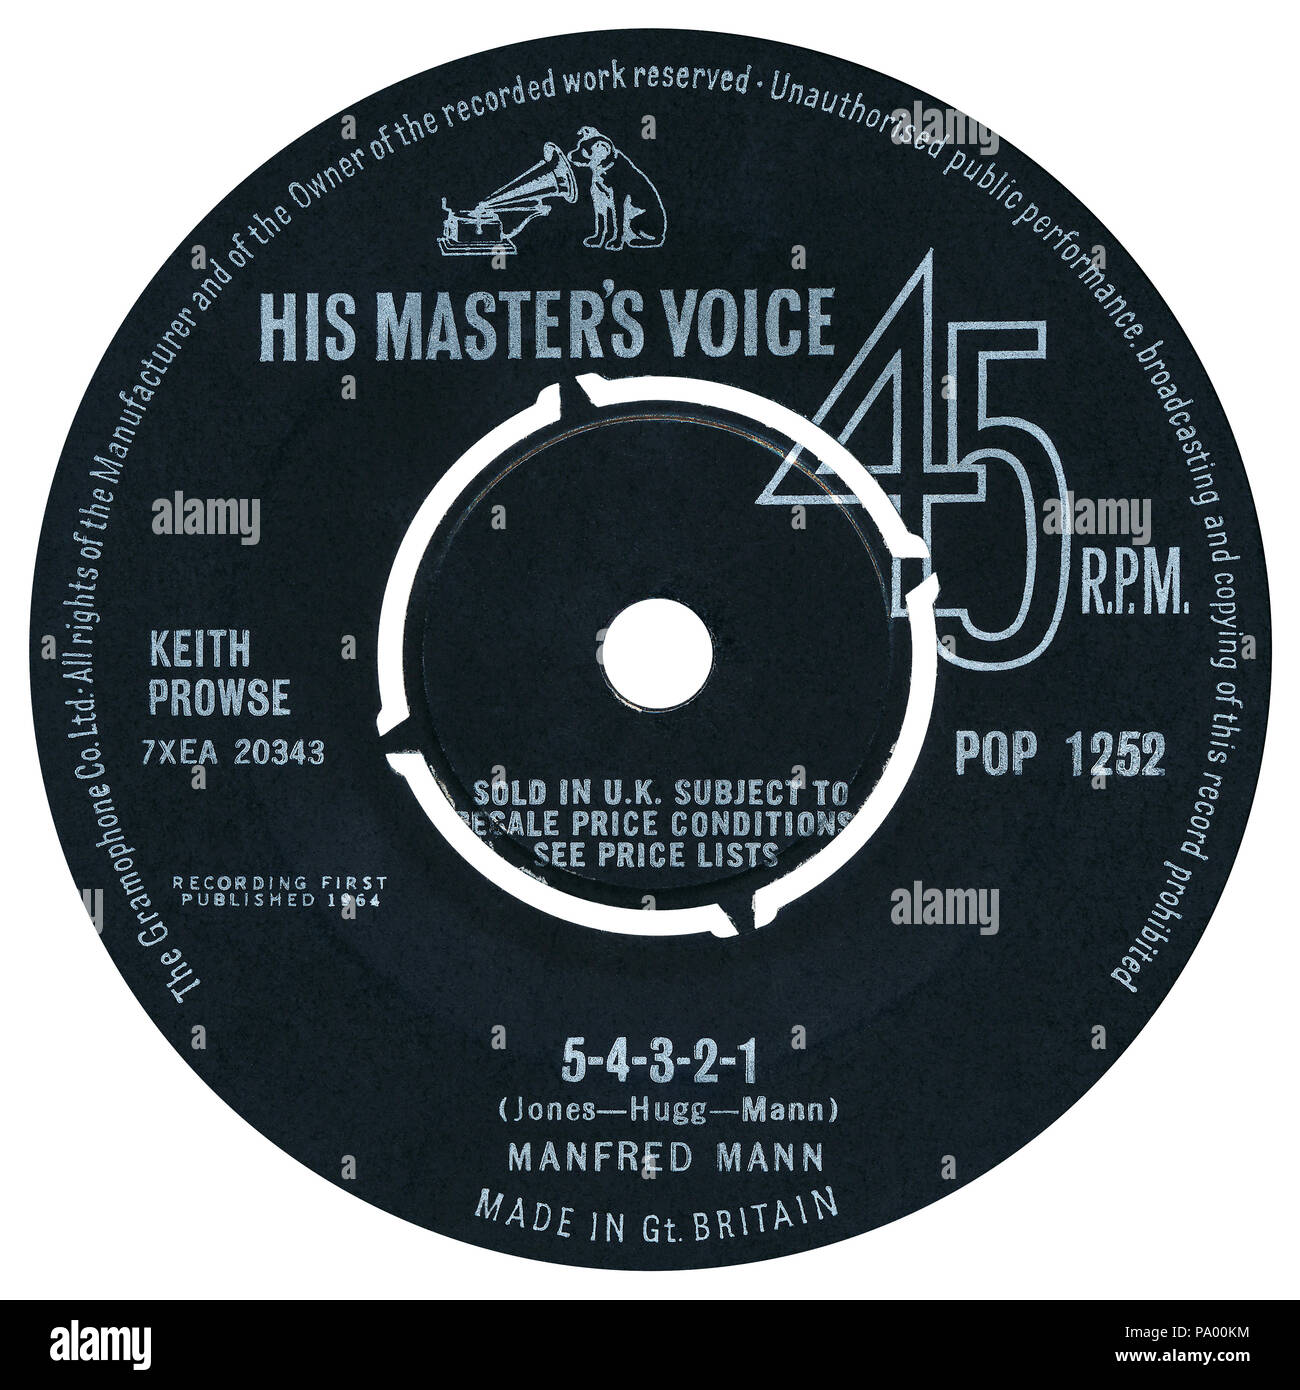 UK 45 tr/min 7' single de 5-4-3-2-1 par Manfred Mann sur le label la voix de son maître à partir de 1964. Écrit par Paul Jones, Mike Hugg et Manfred Mann et produit par John Burgess. Banque D'Images